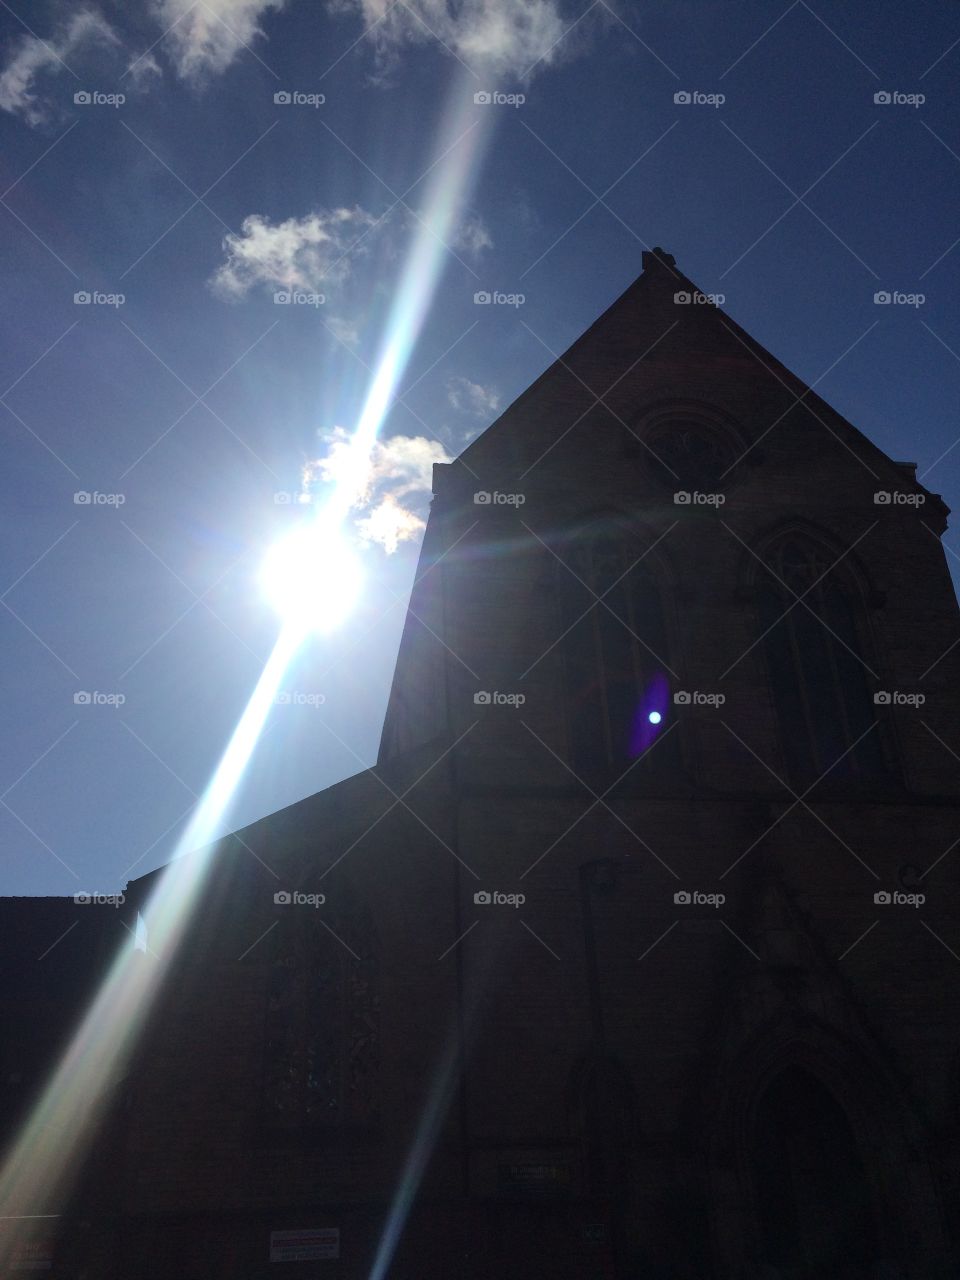 The Sun Beams behind a church